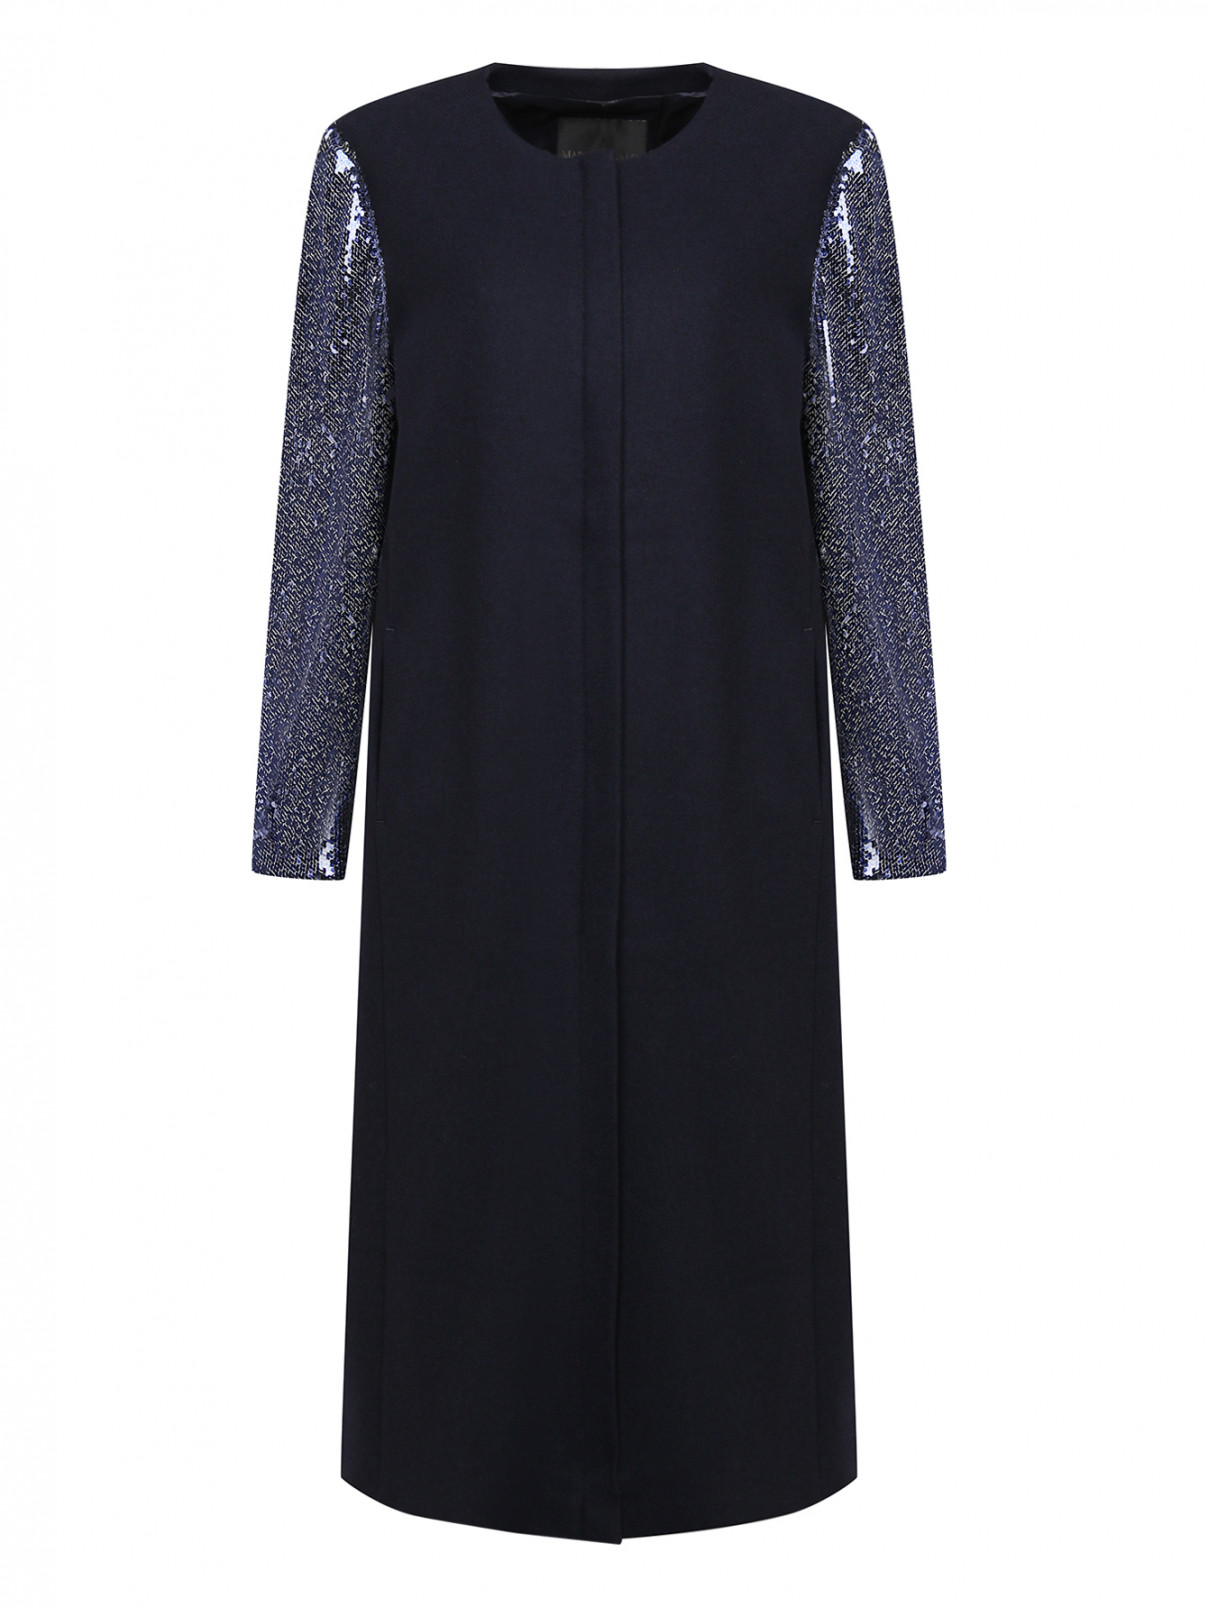 Пальто декорированное пайетками Marina Rinaldi  –  Общий вид  – Цвет:  Синий